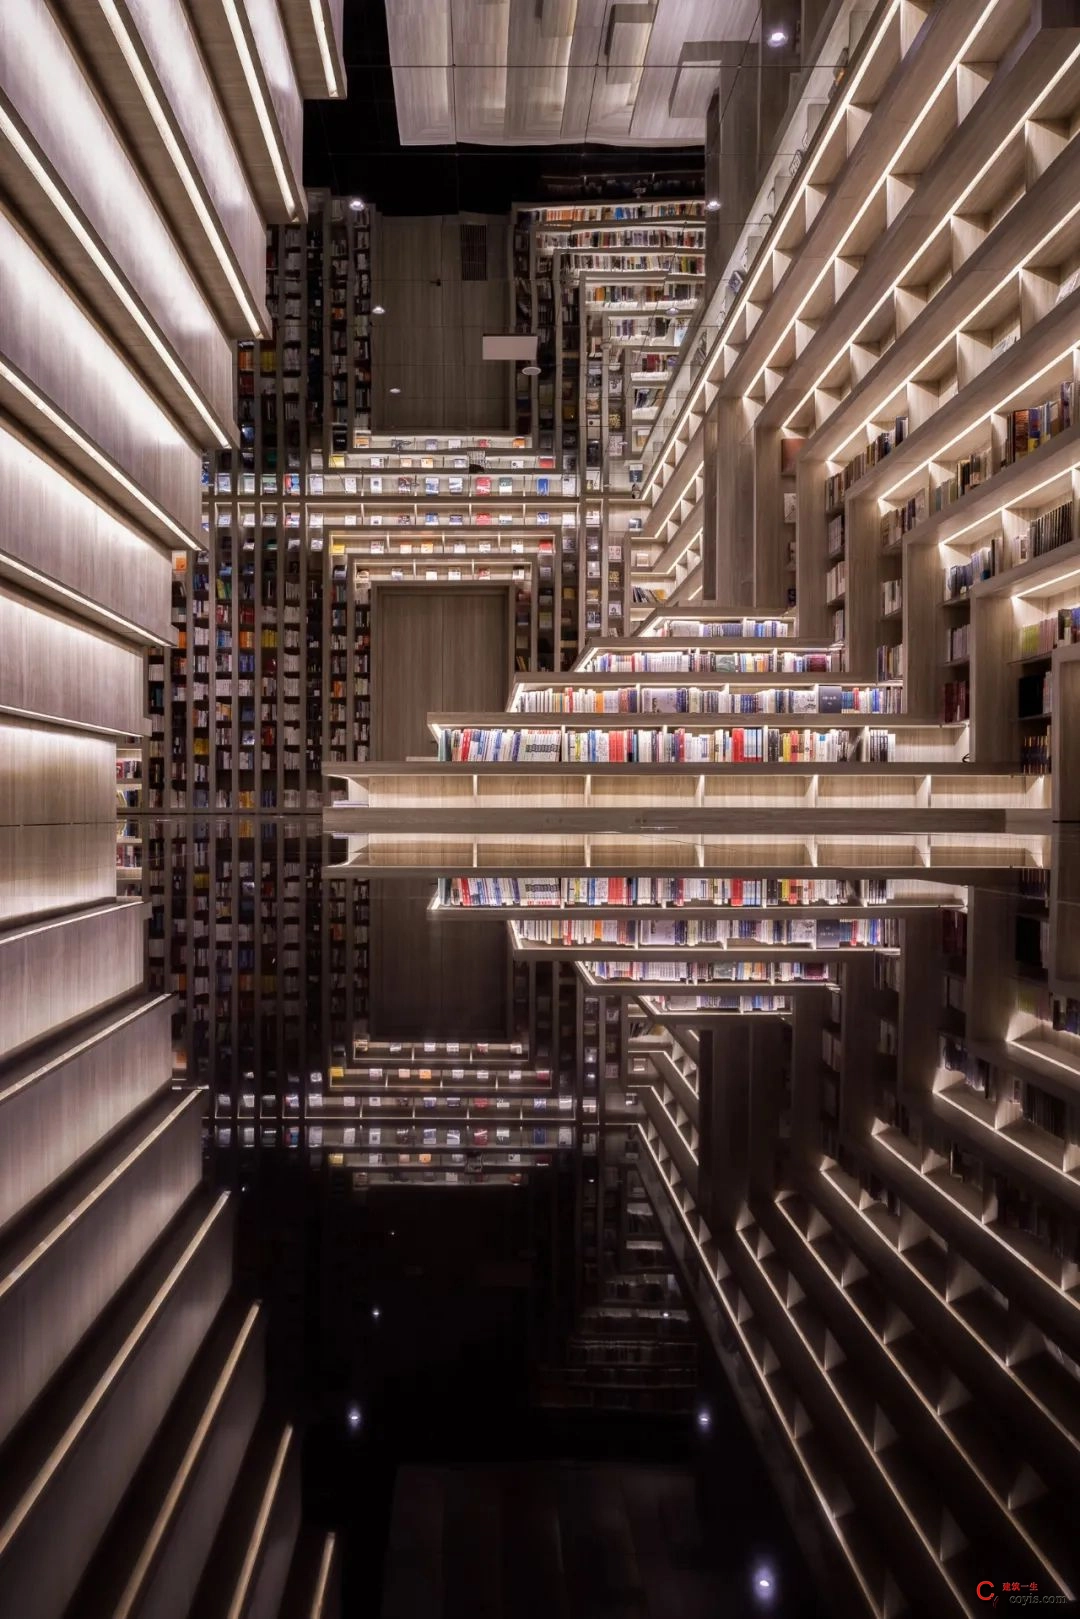 斐波影院X鐘書閣丨一家藏在書店里的電影院，打造出了文藝愛好者的天堂 / 唯想國際